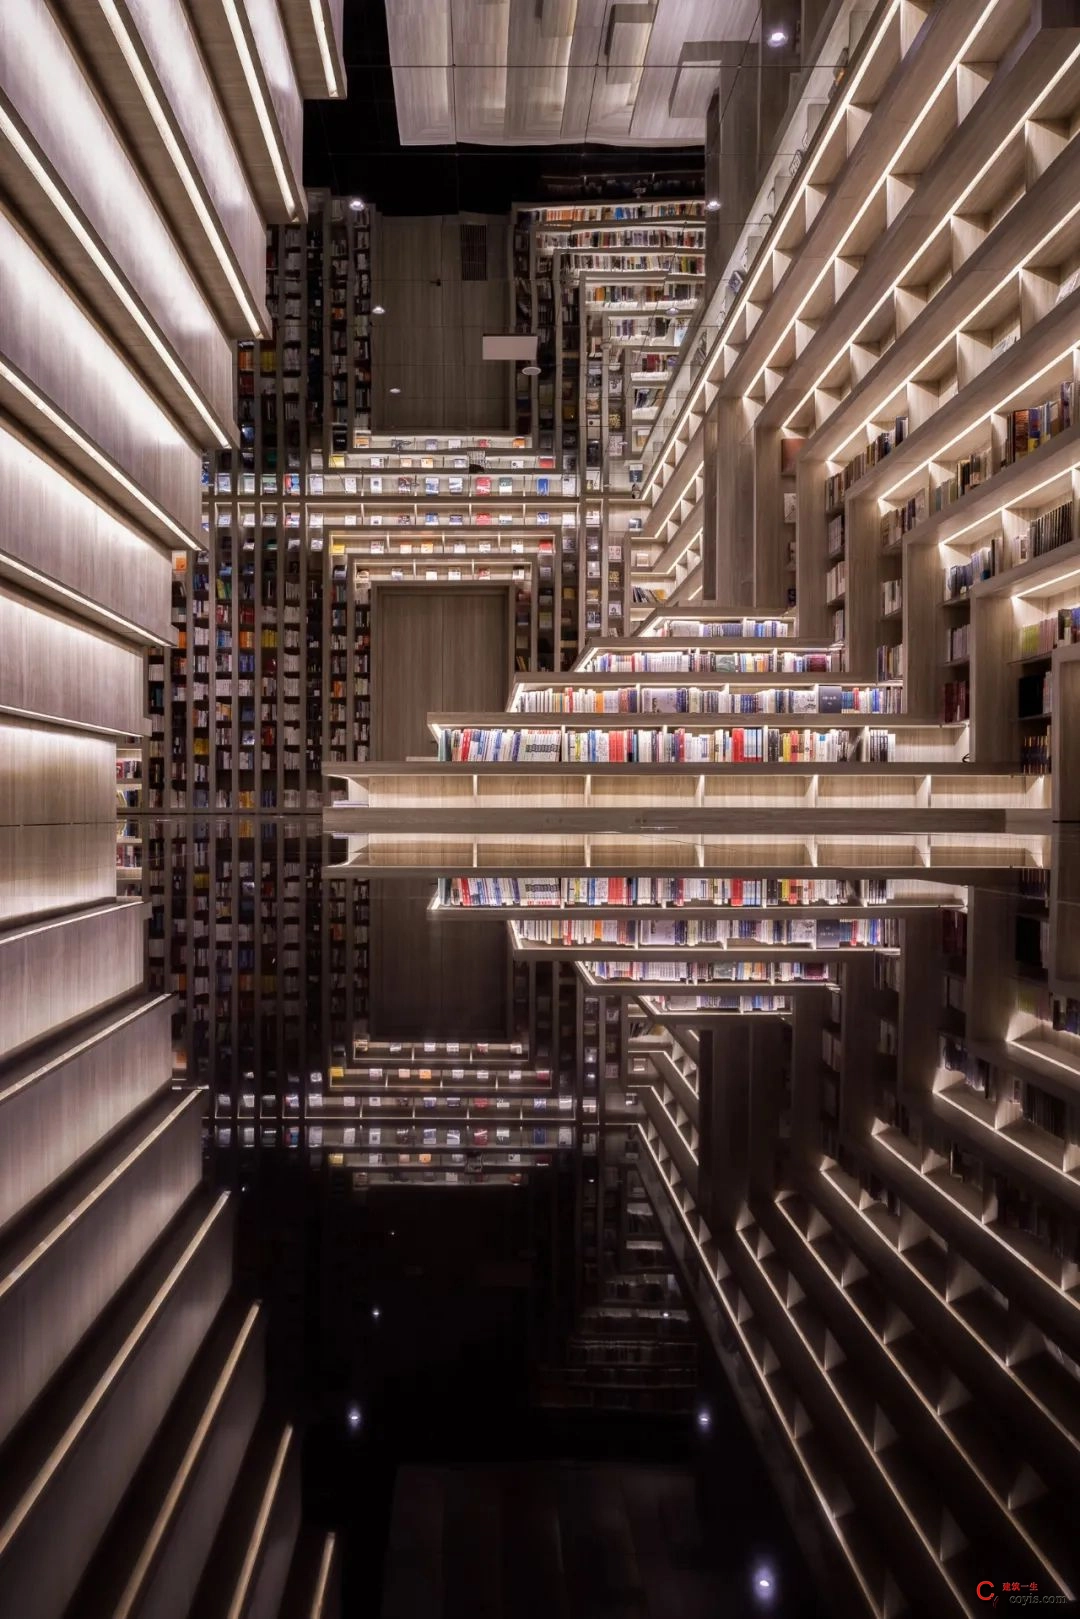 斐波影院X鐘書閣丨一家藏在書店里的電影院，打造出了文藝愛好者的天堂 / 唯想國際